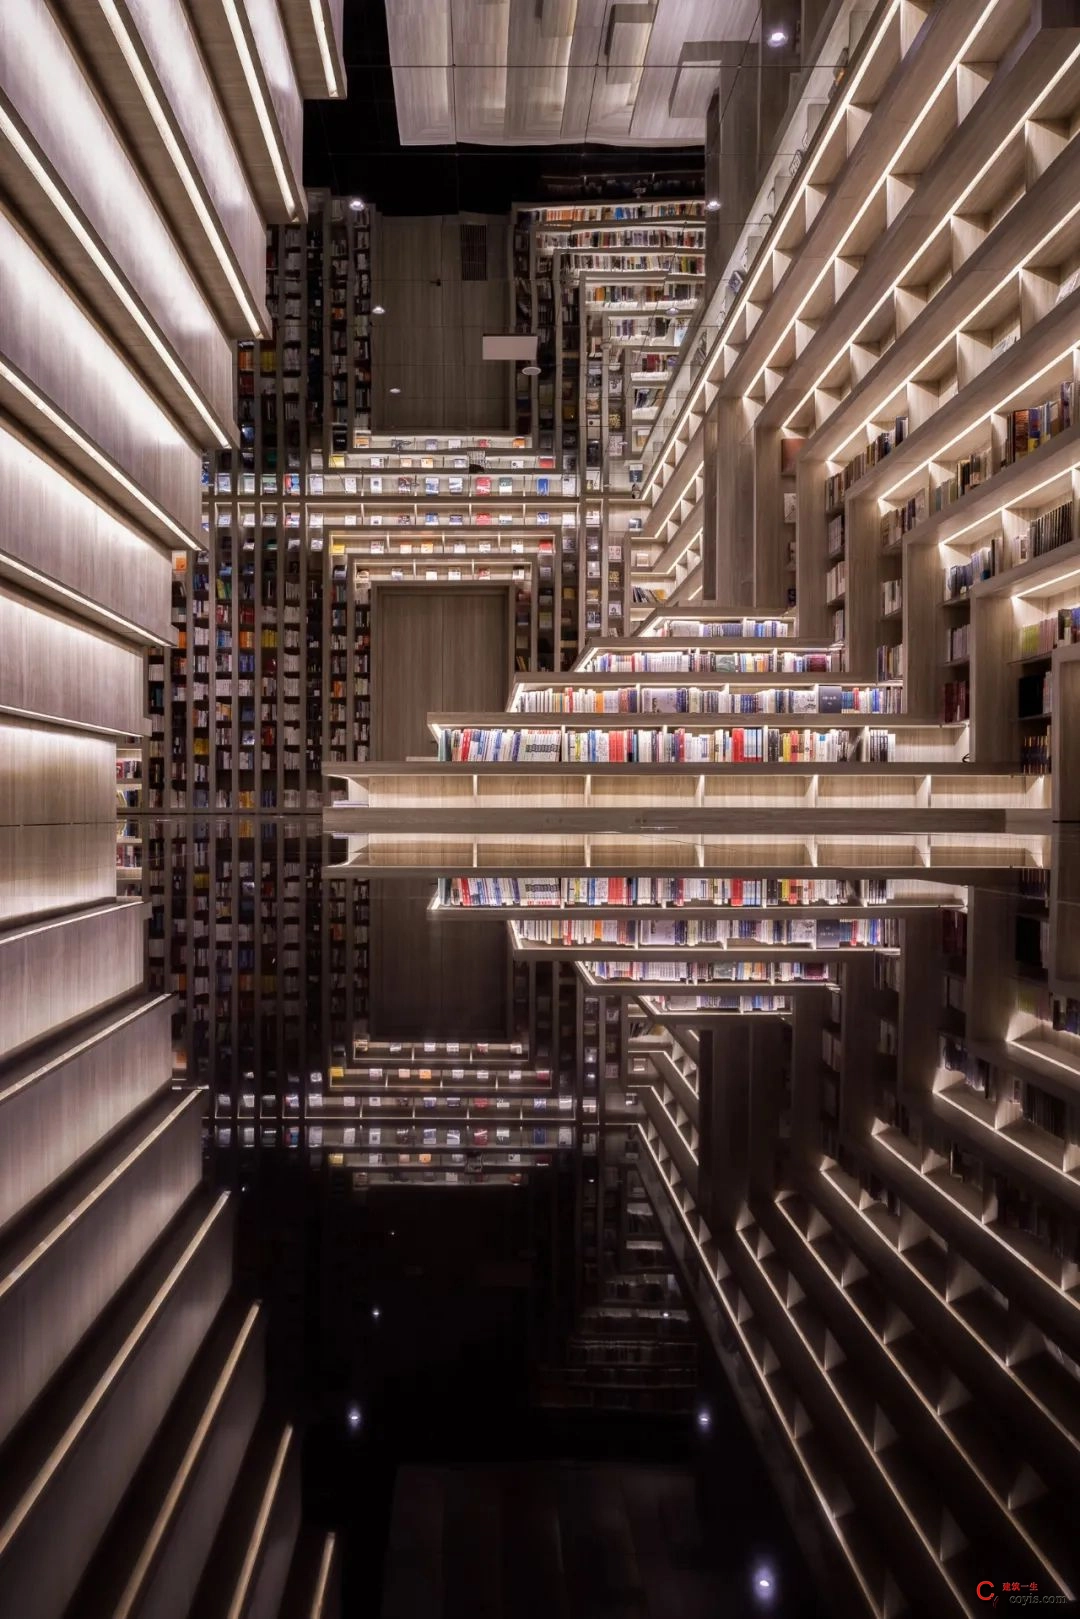 斐波影院X鐘書閣丨一家藏在書店里的電影院，打造出了文藝愛好者的天堂 / 唯想國際